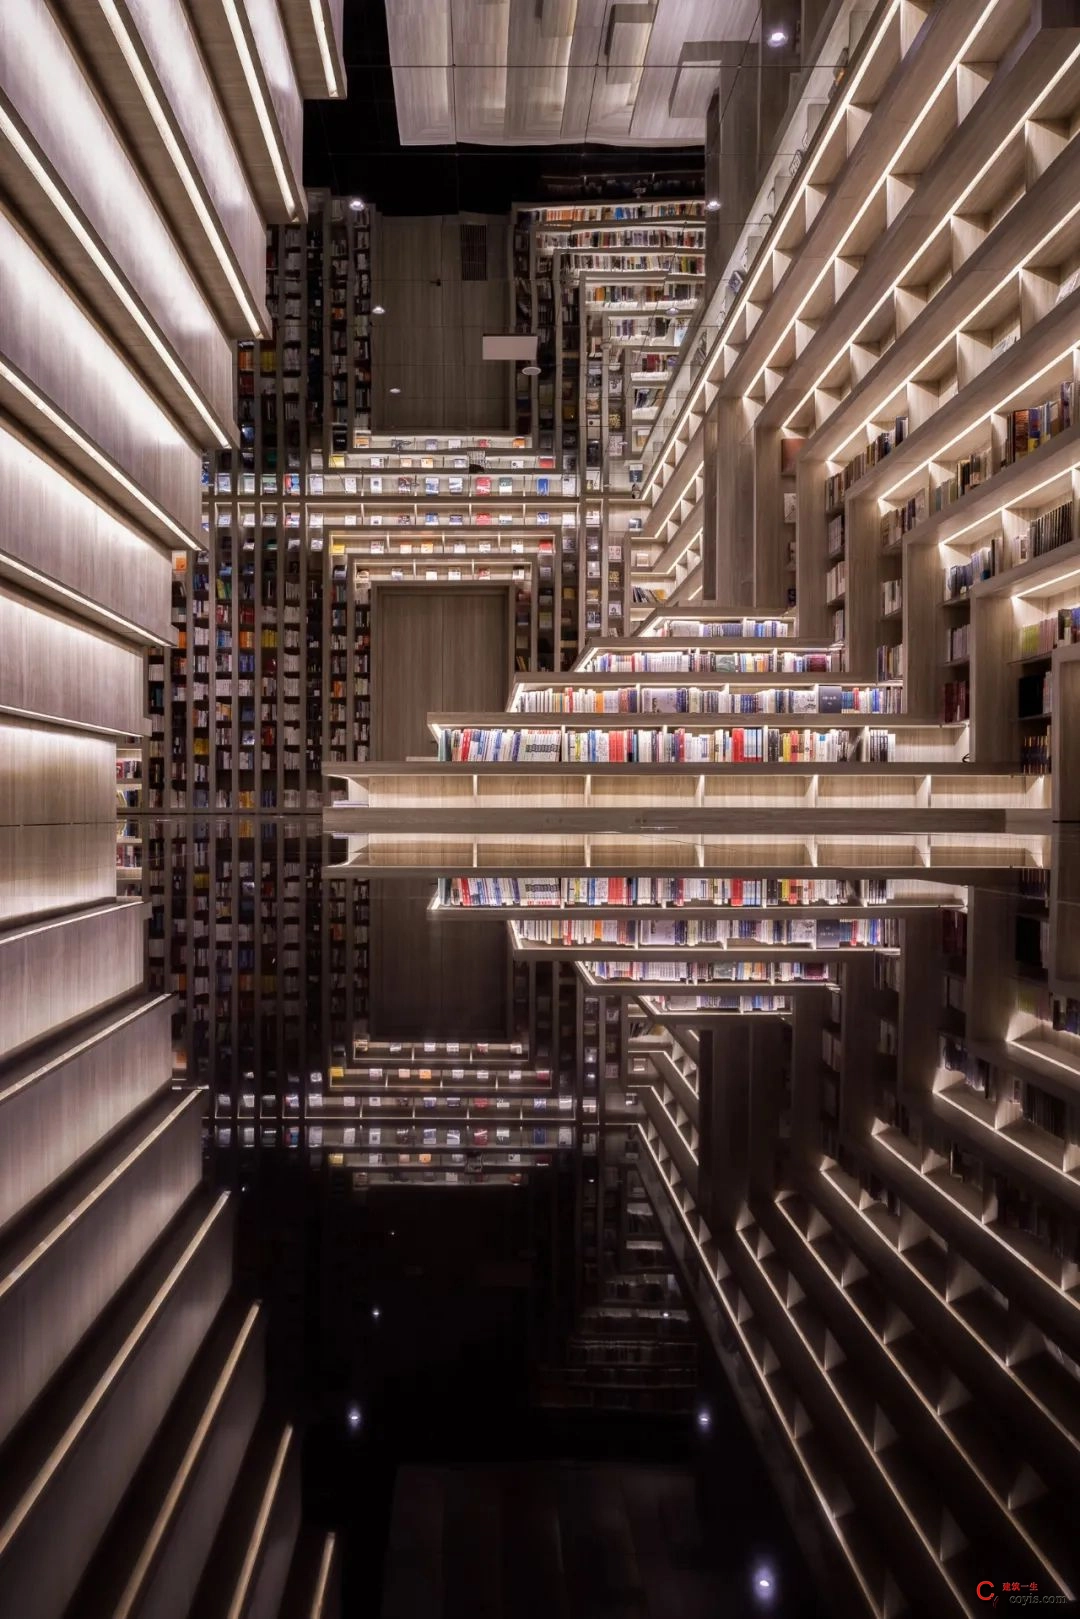 斐波影院X鐘書閣丨一家藏在書店里的電影院，打造出了文藝愛好者的天堂 / 唯想國際